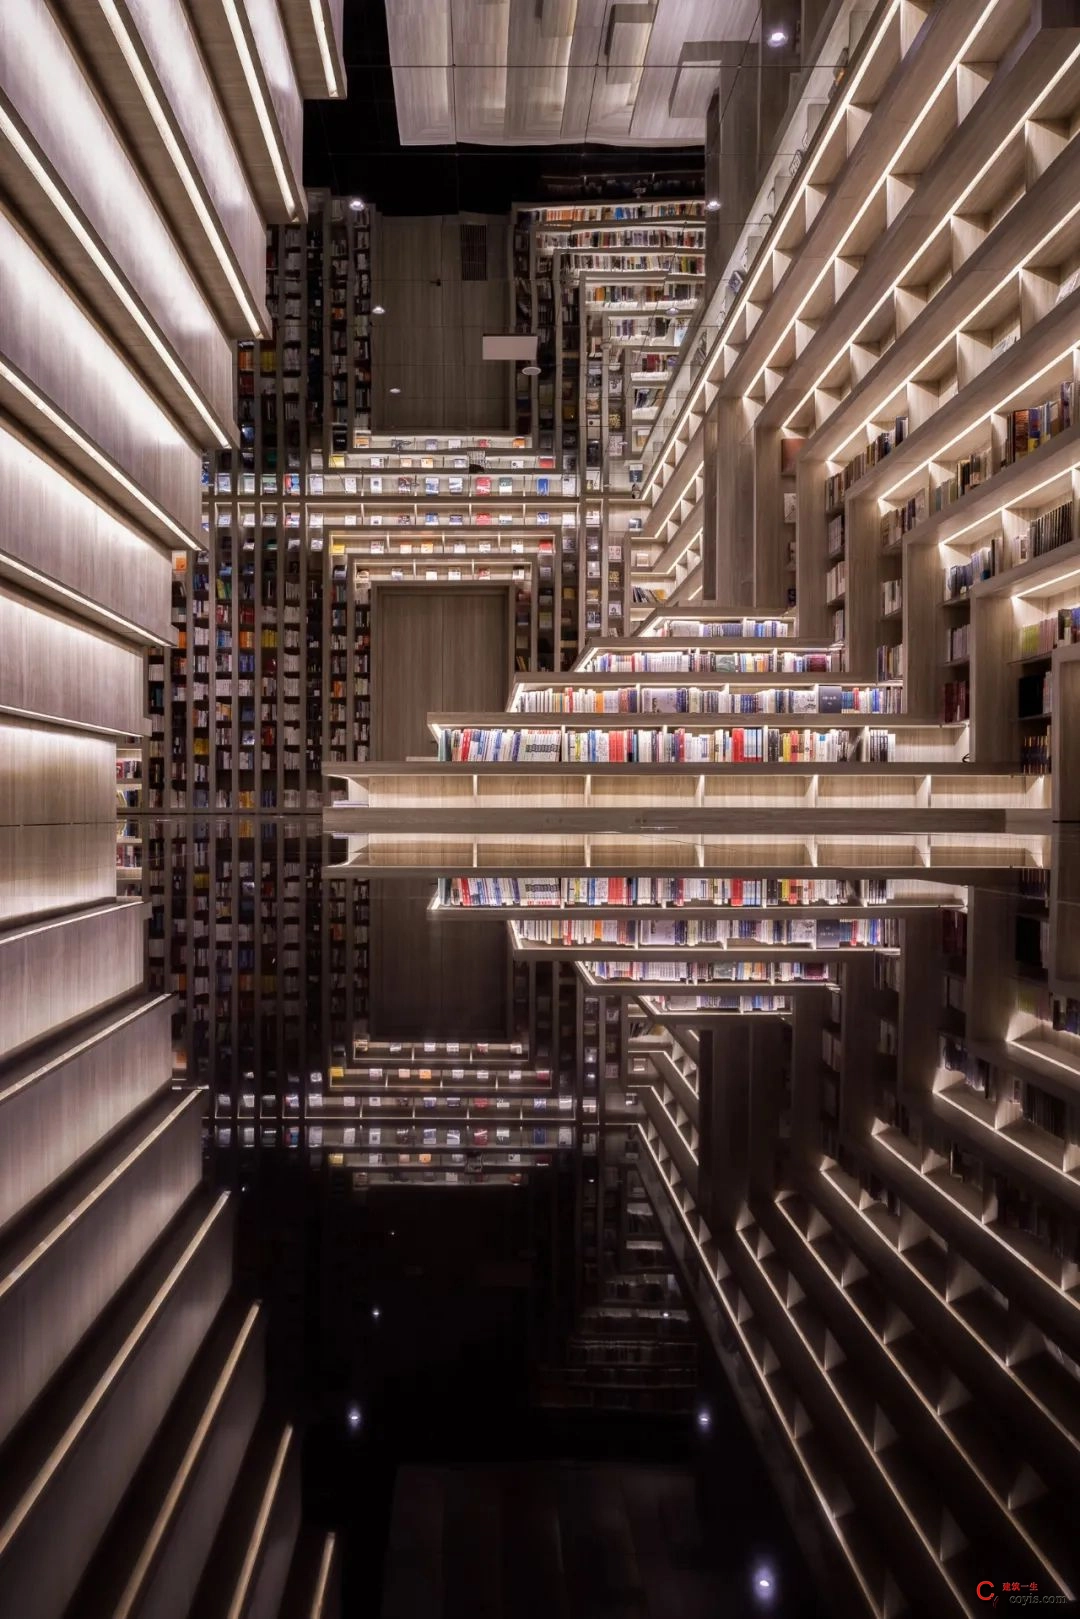 斐波影院X鐘書閣丨一家藏在書店里的電影院，打造出了文藝愛好者的天堂 / 唯想國際